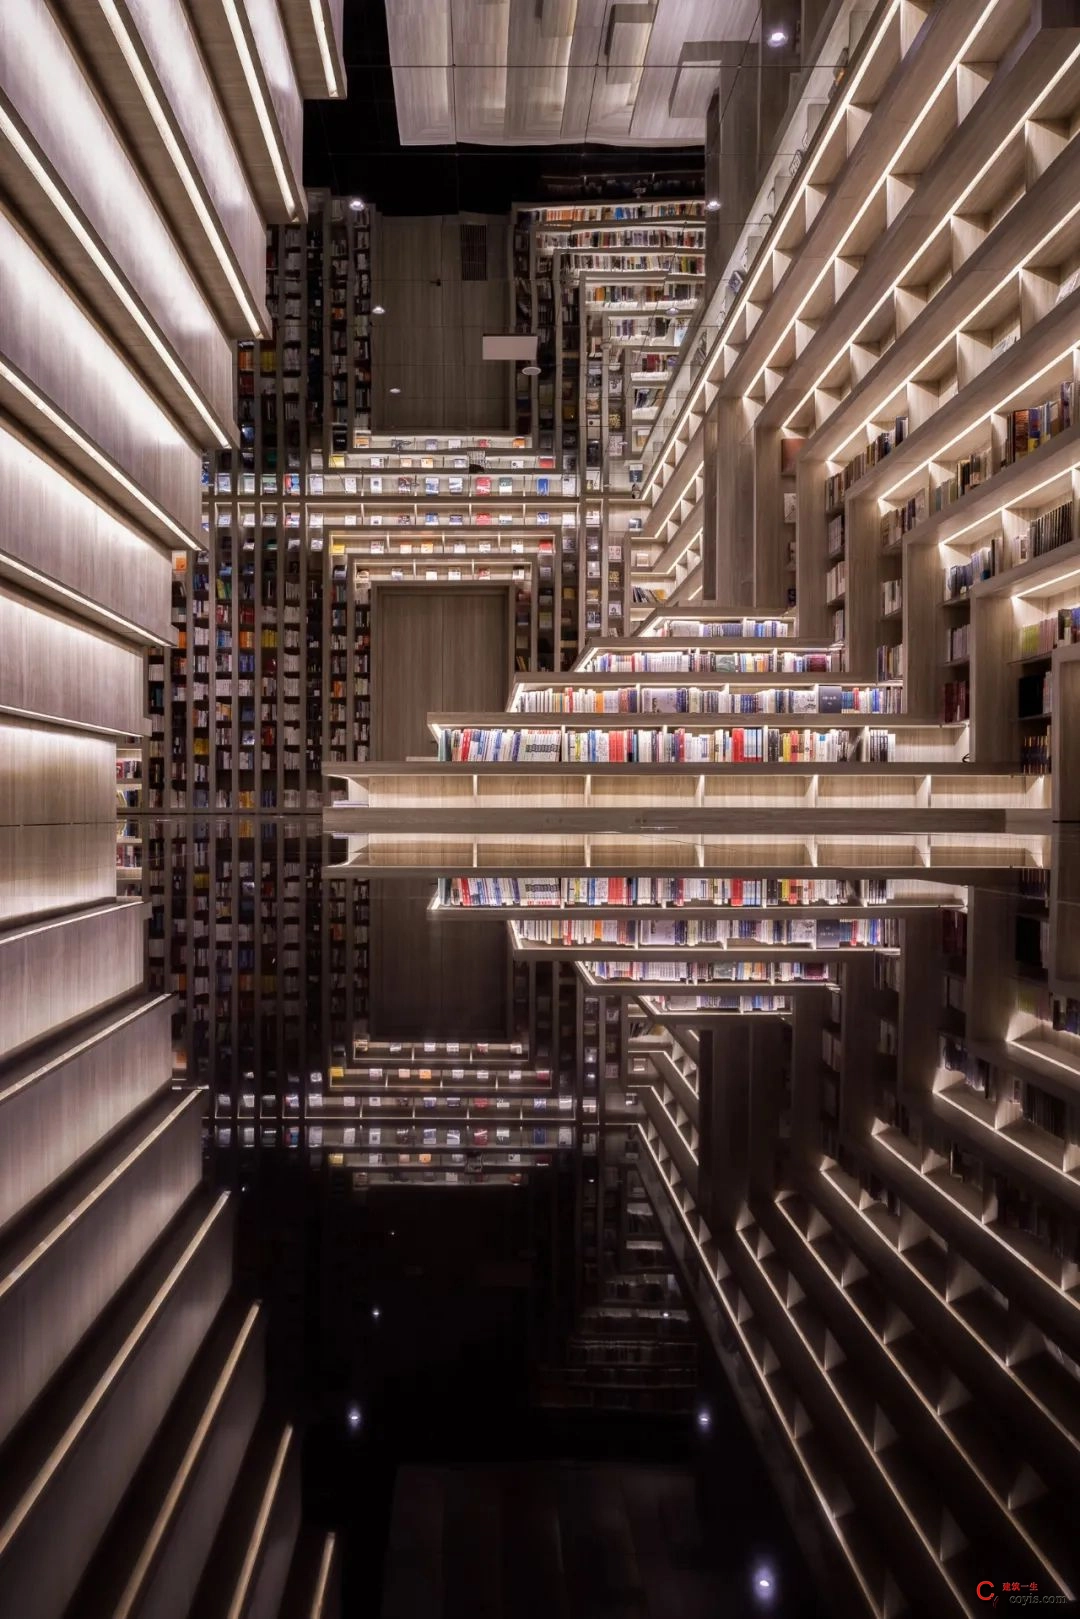 斐波影院X鐘書閣丨一家藏在書店里的電影院，打造出了文藝愛好者的天堂 / 唯想國際